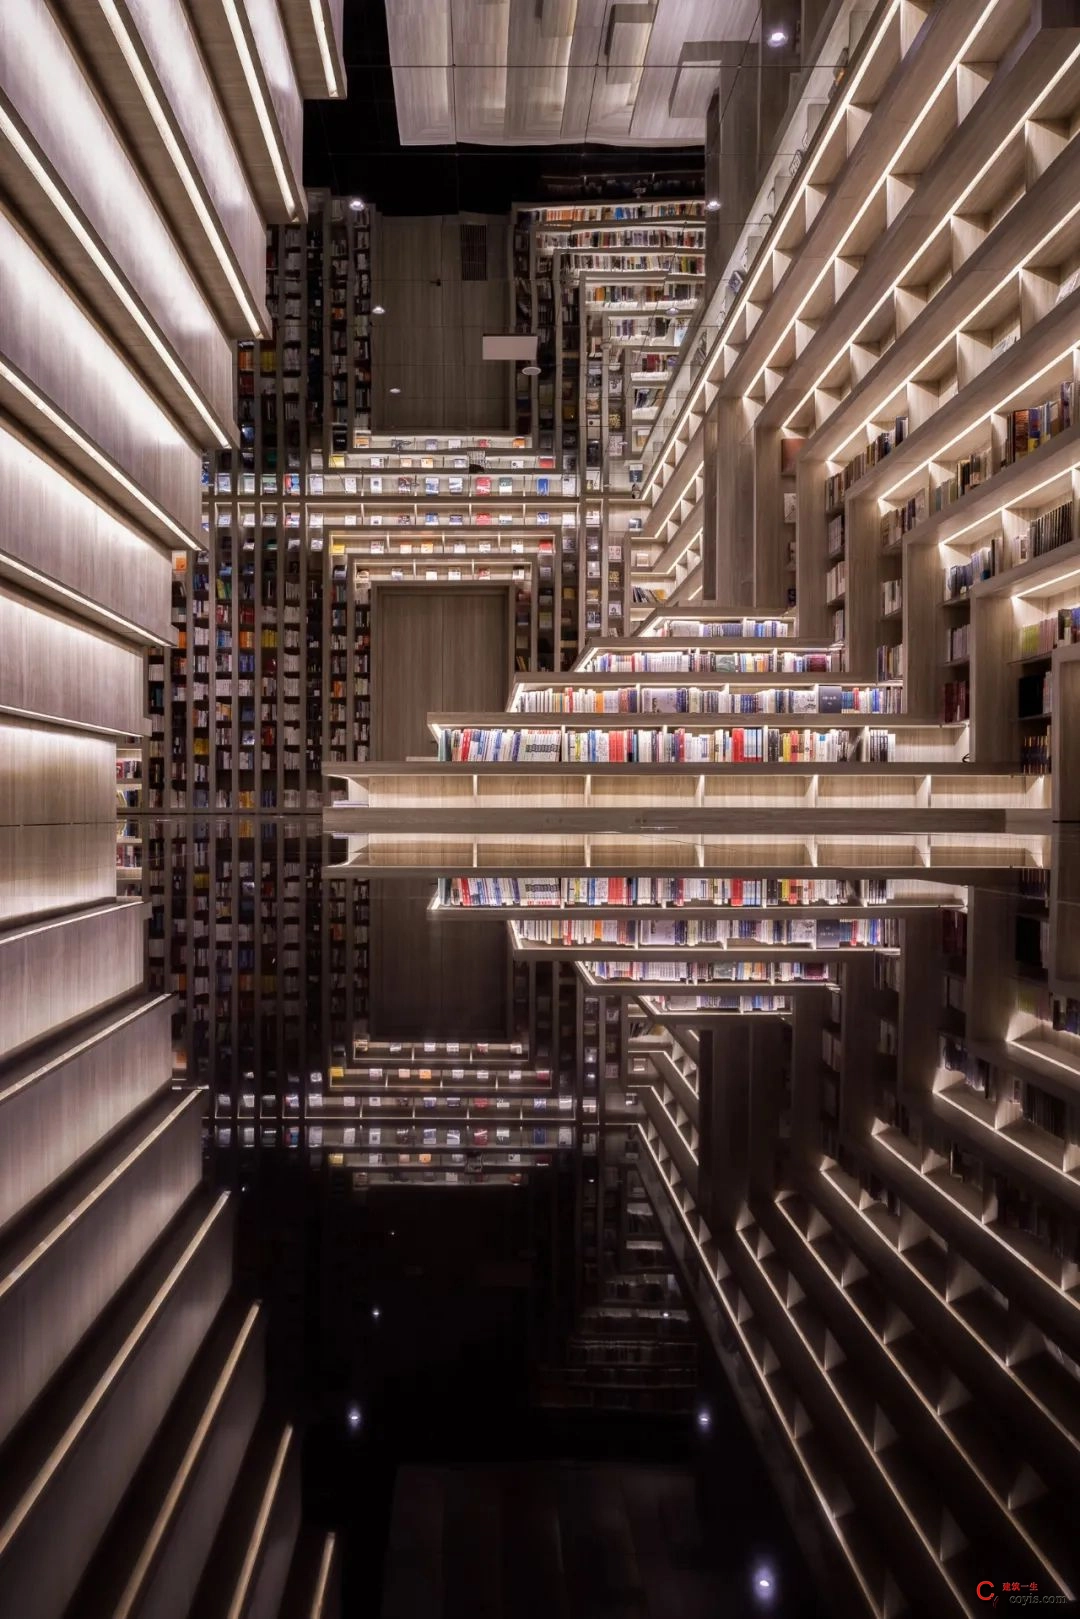 斐波影院X鐘書閣丨一家藏在書店里的電影院，打造出了文藝愛好者的天堂 / 唯想國際